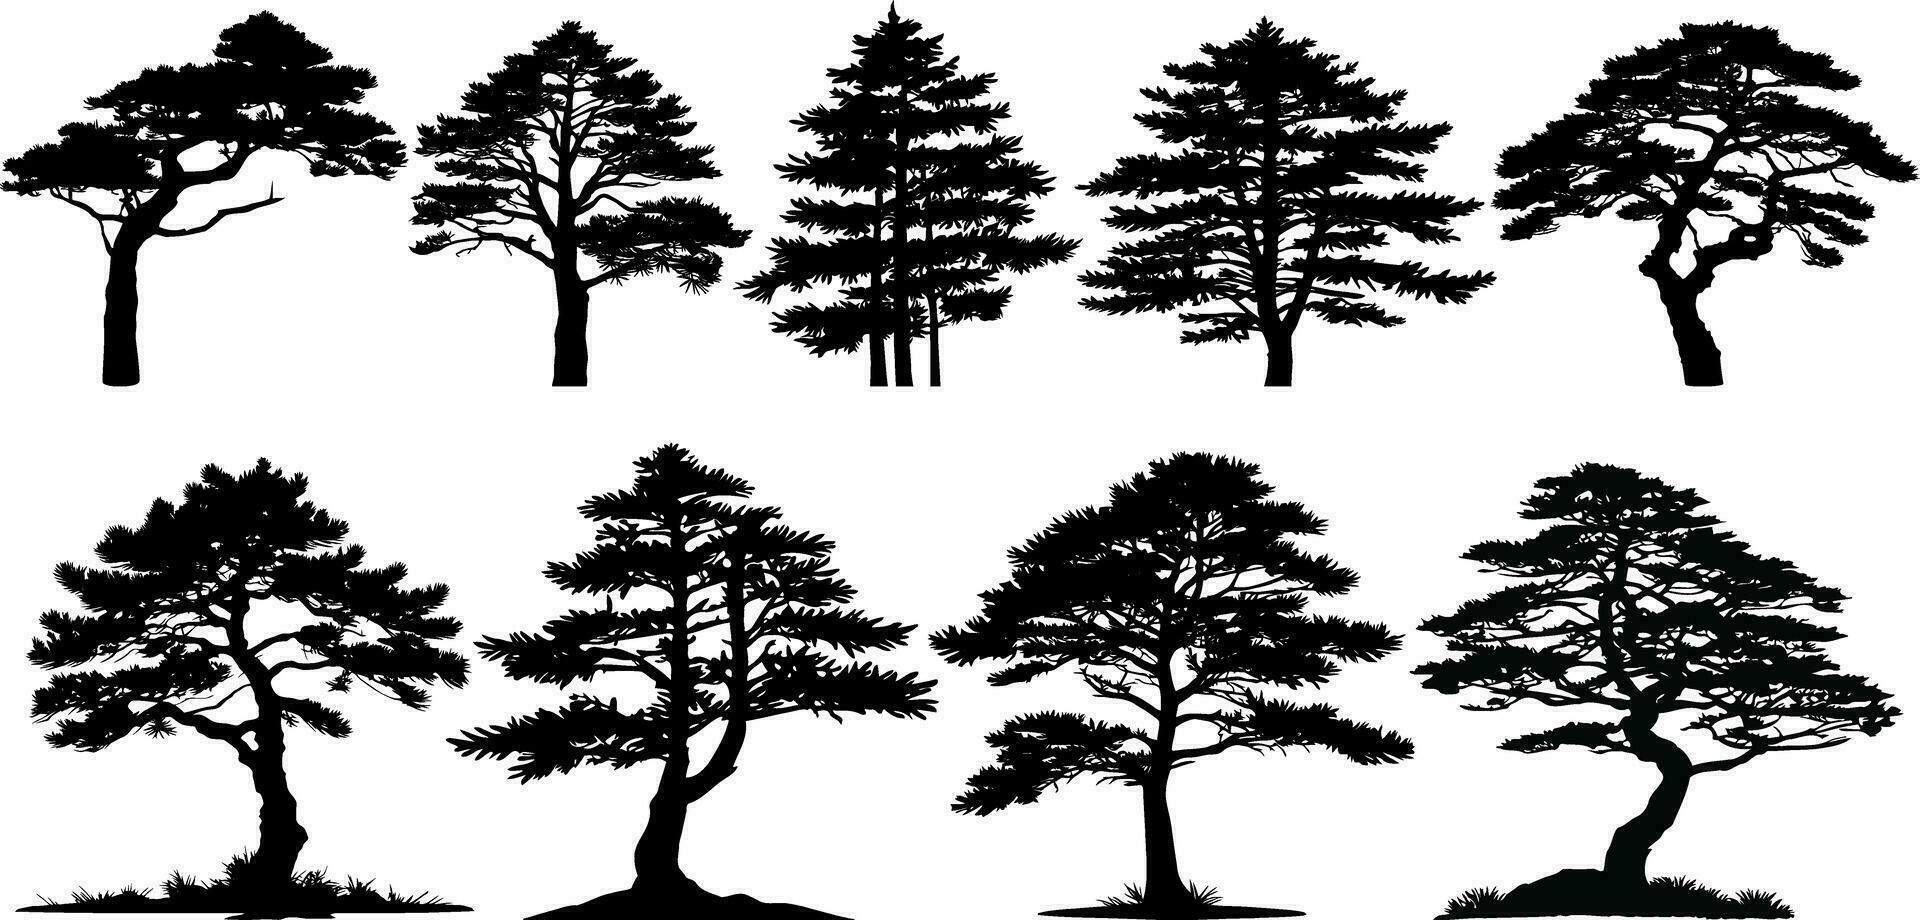 verzameling van silhouetten van pijnboom bomen. vector illustratie.